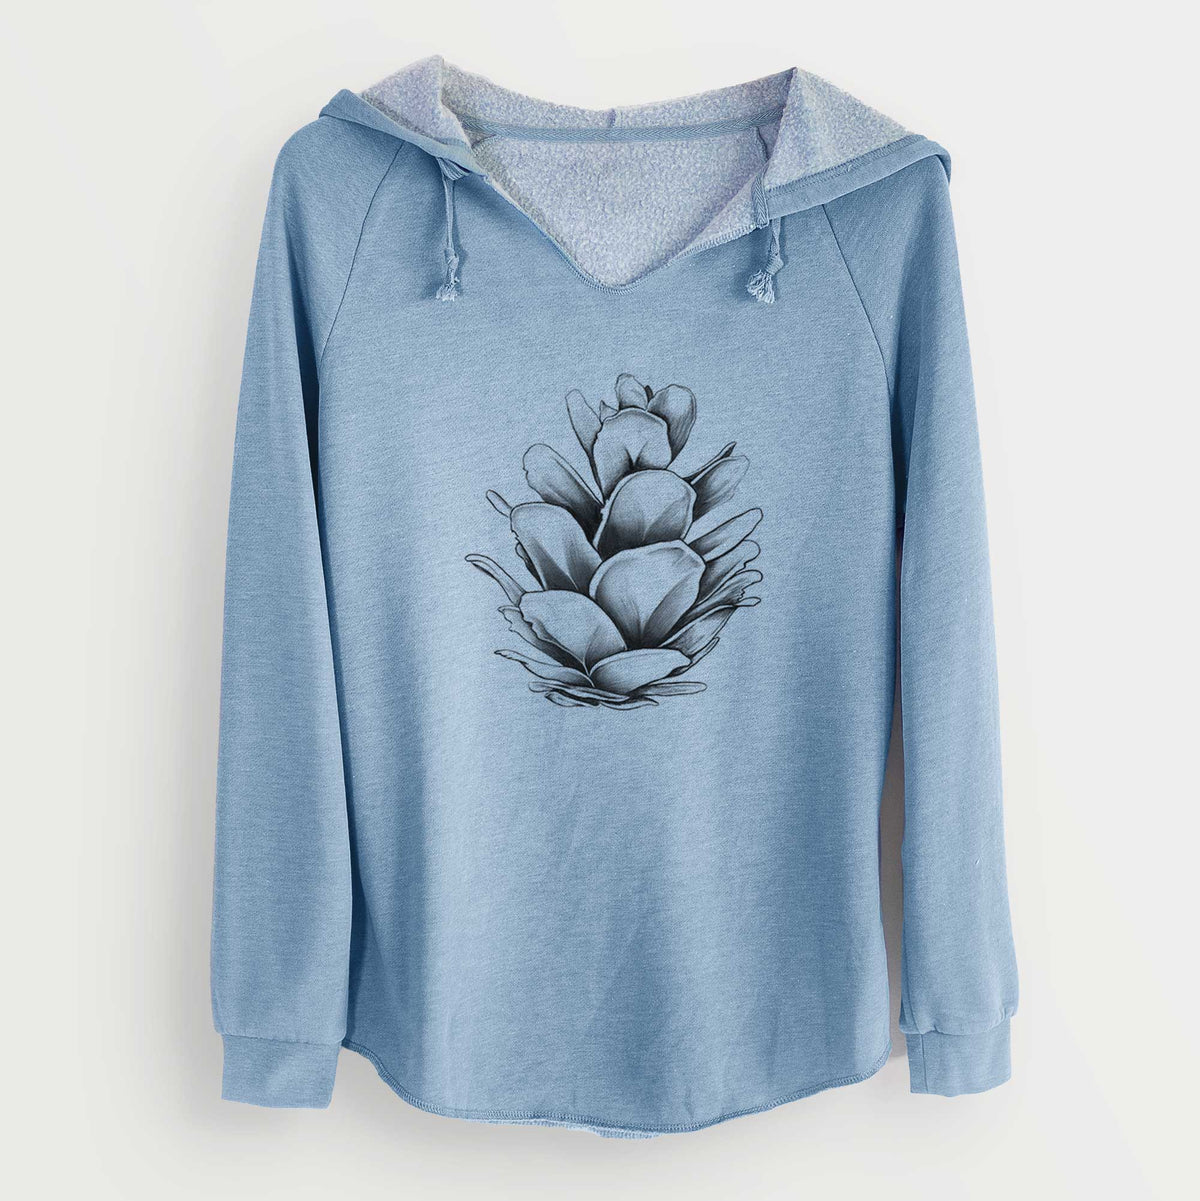 Tsuga heterophylla - Western Hemlock Pine Cone - Cali Wave Hooded Sweatshirt